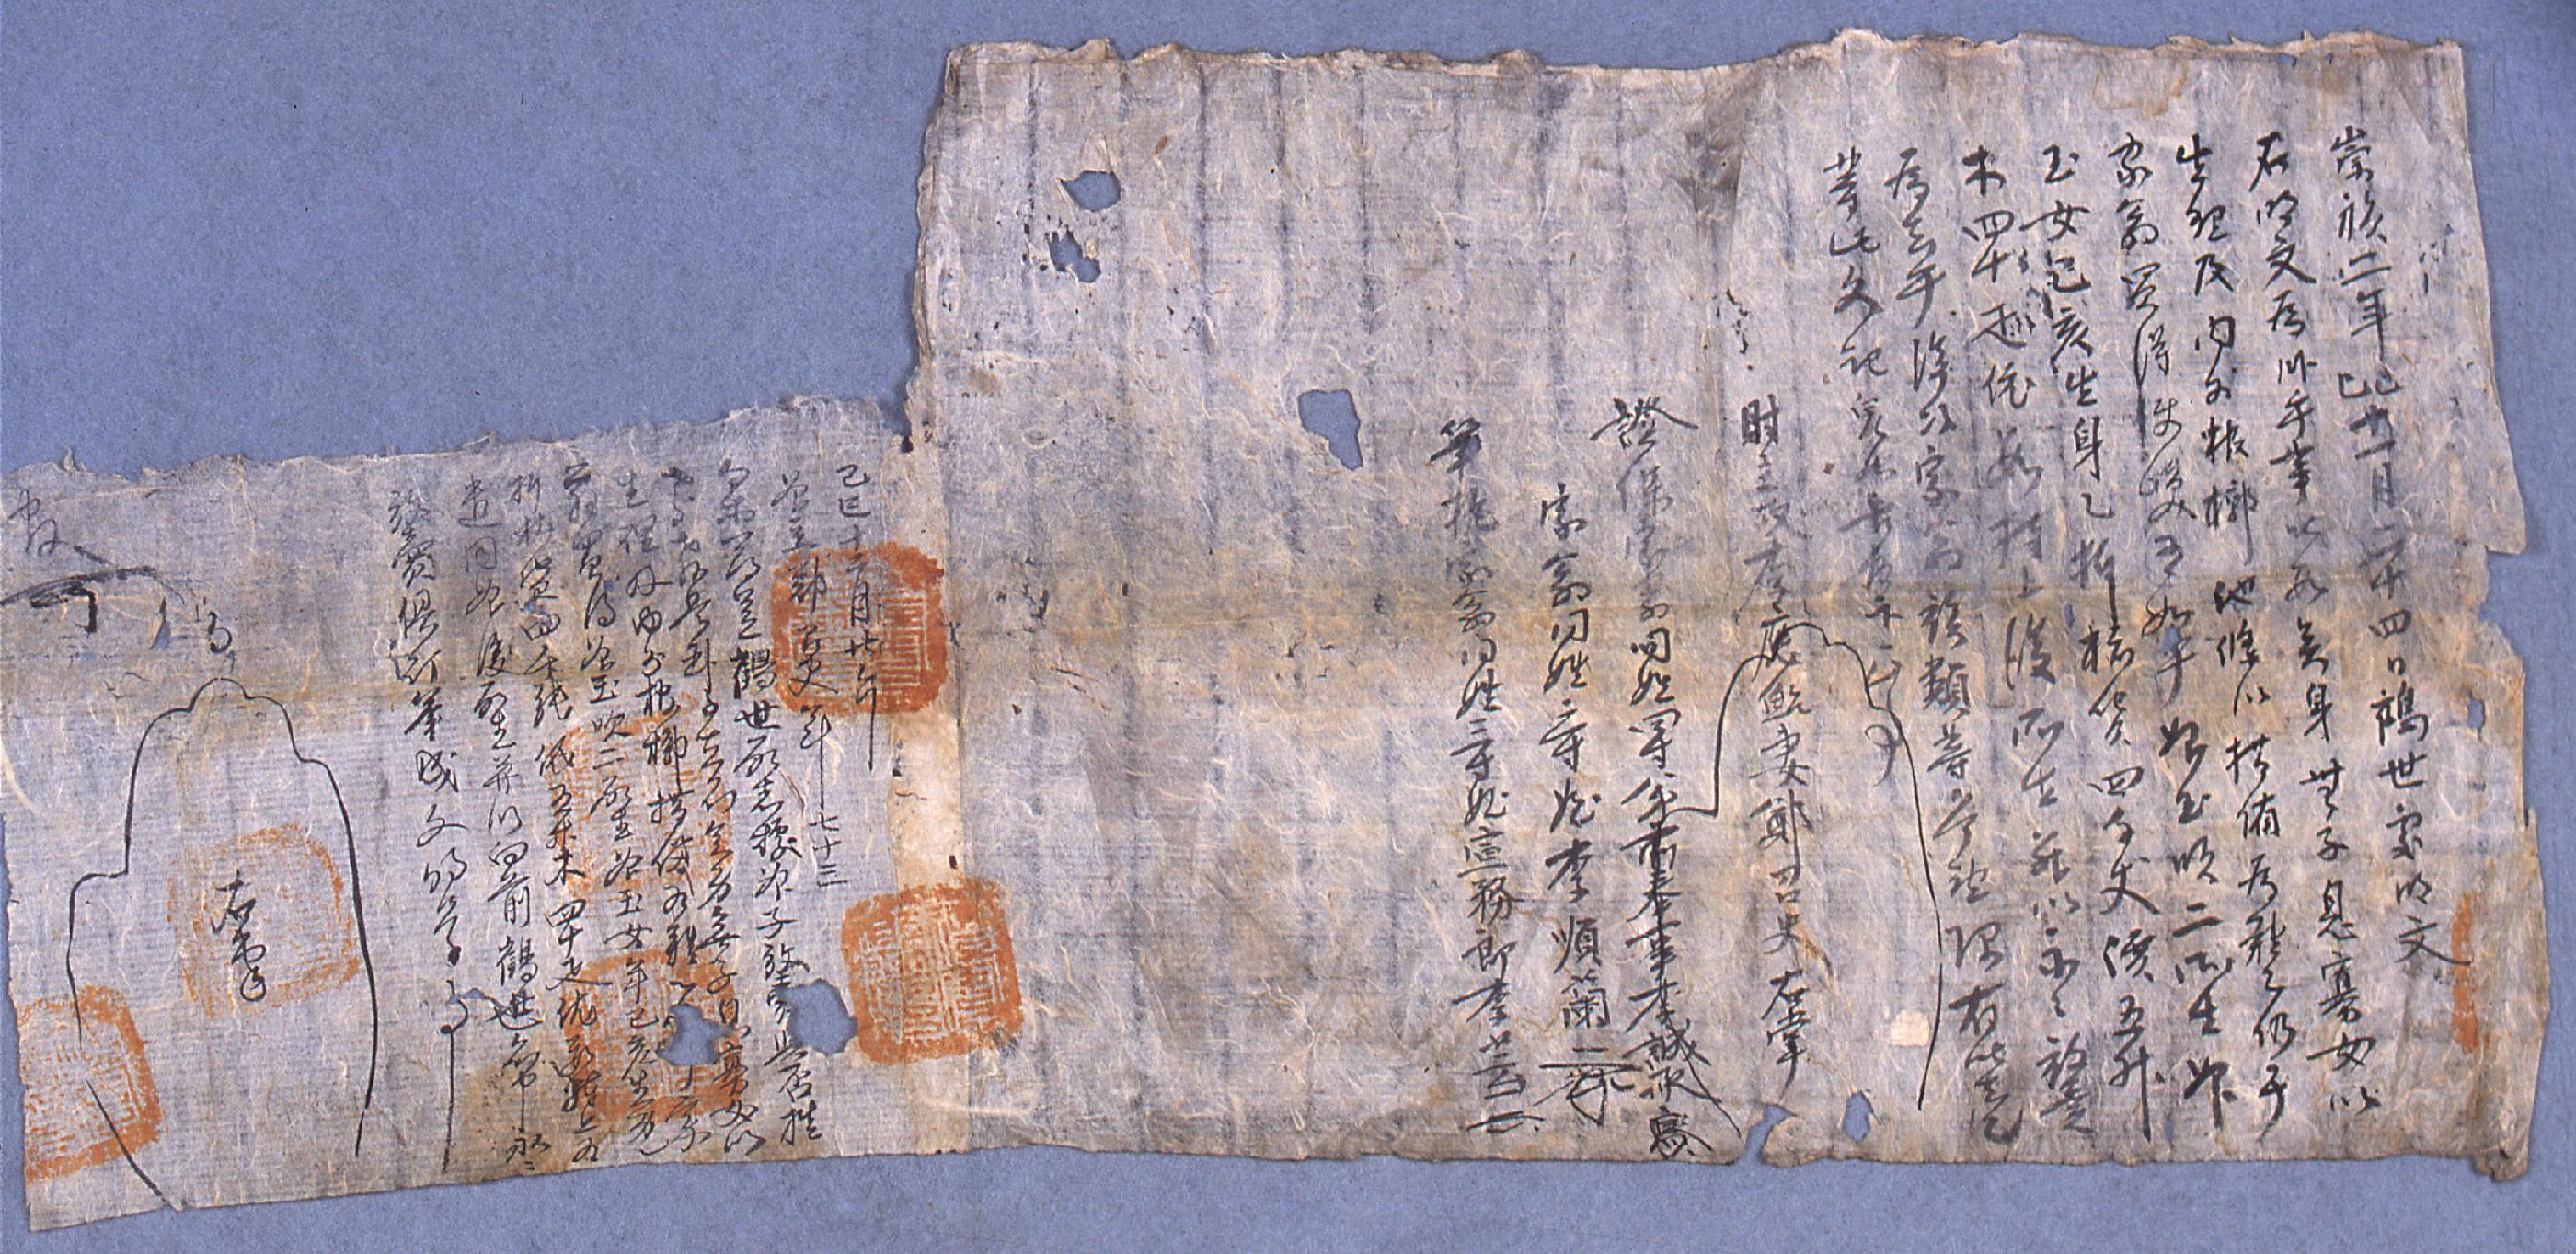 이응태처(李應鮐妻) 정조이[鄭召史]가 1629년에 작성한 노비 방매문기